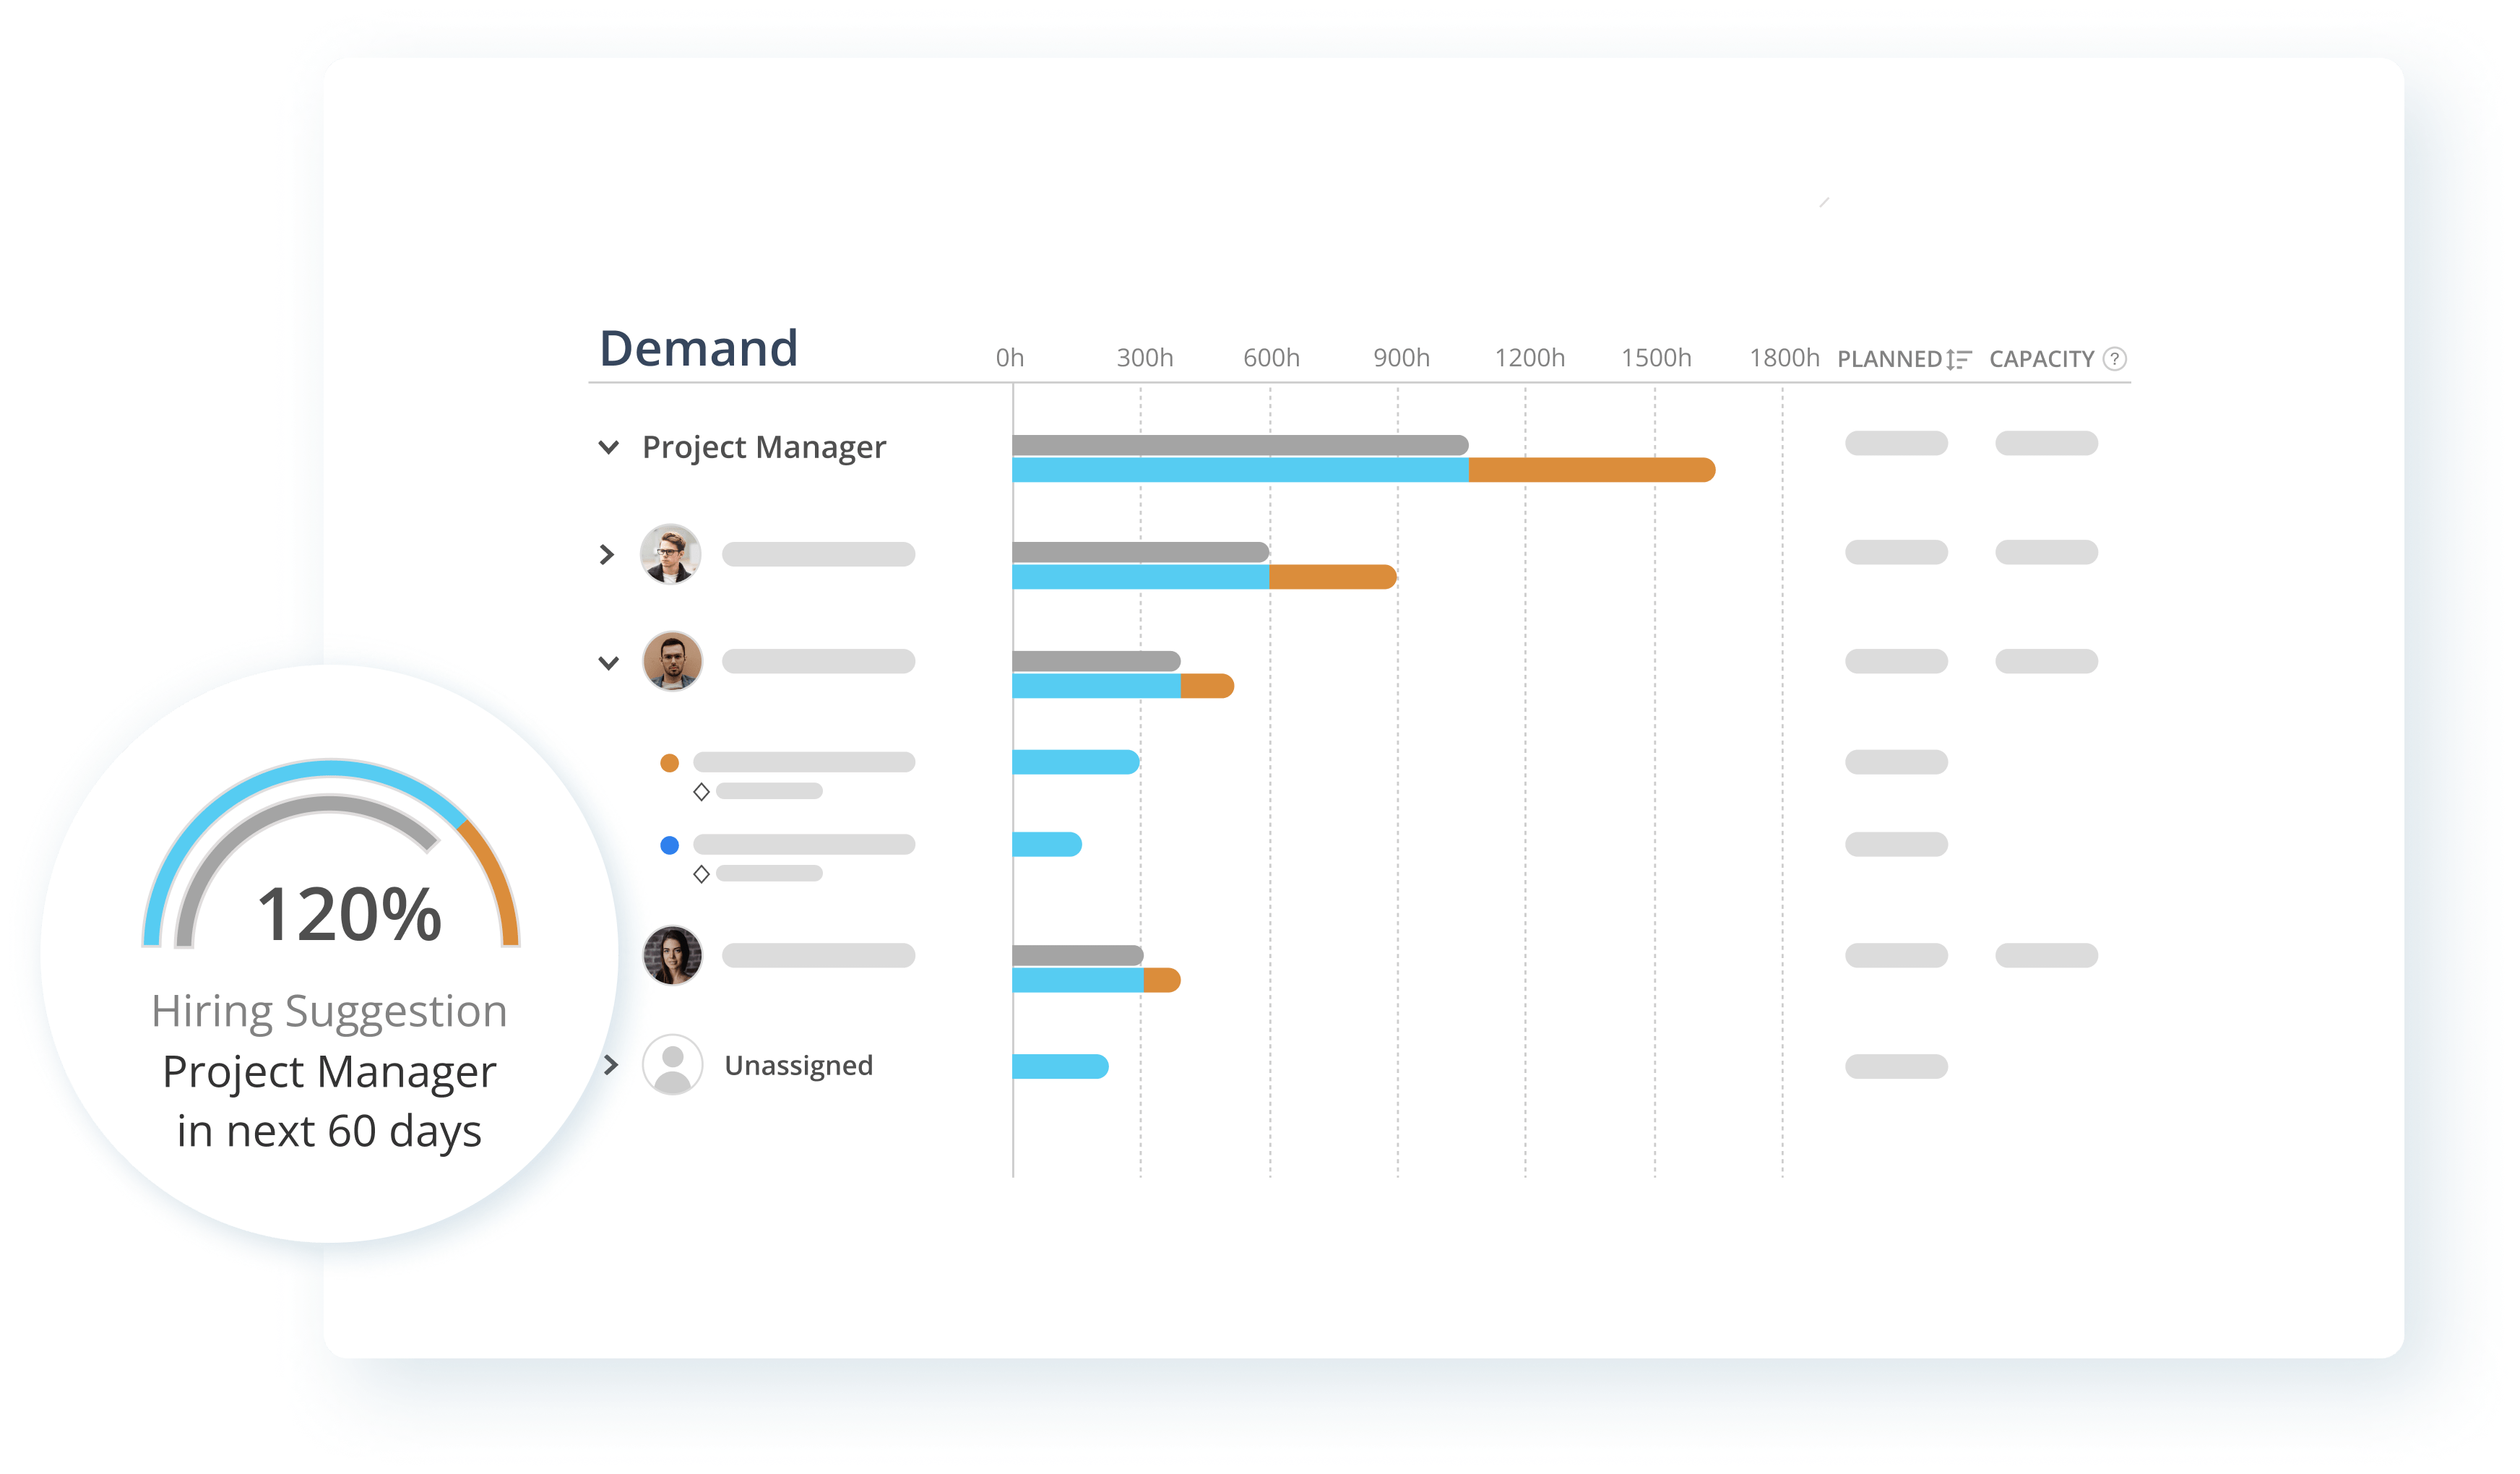 Demand Analysis Image